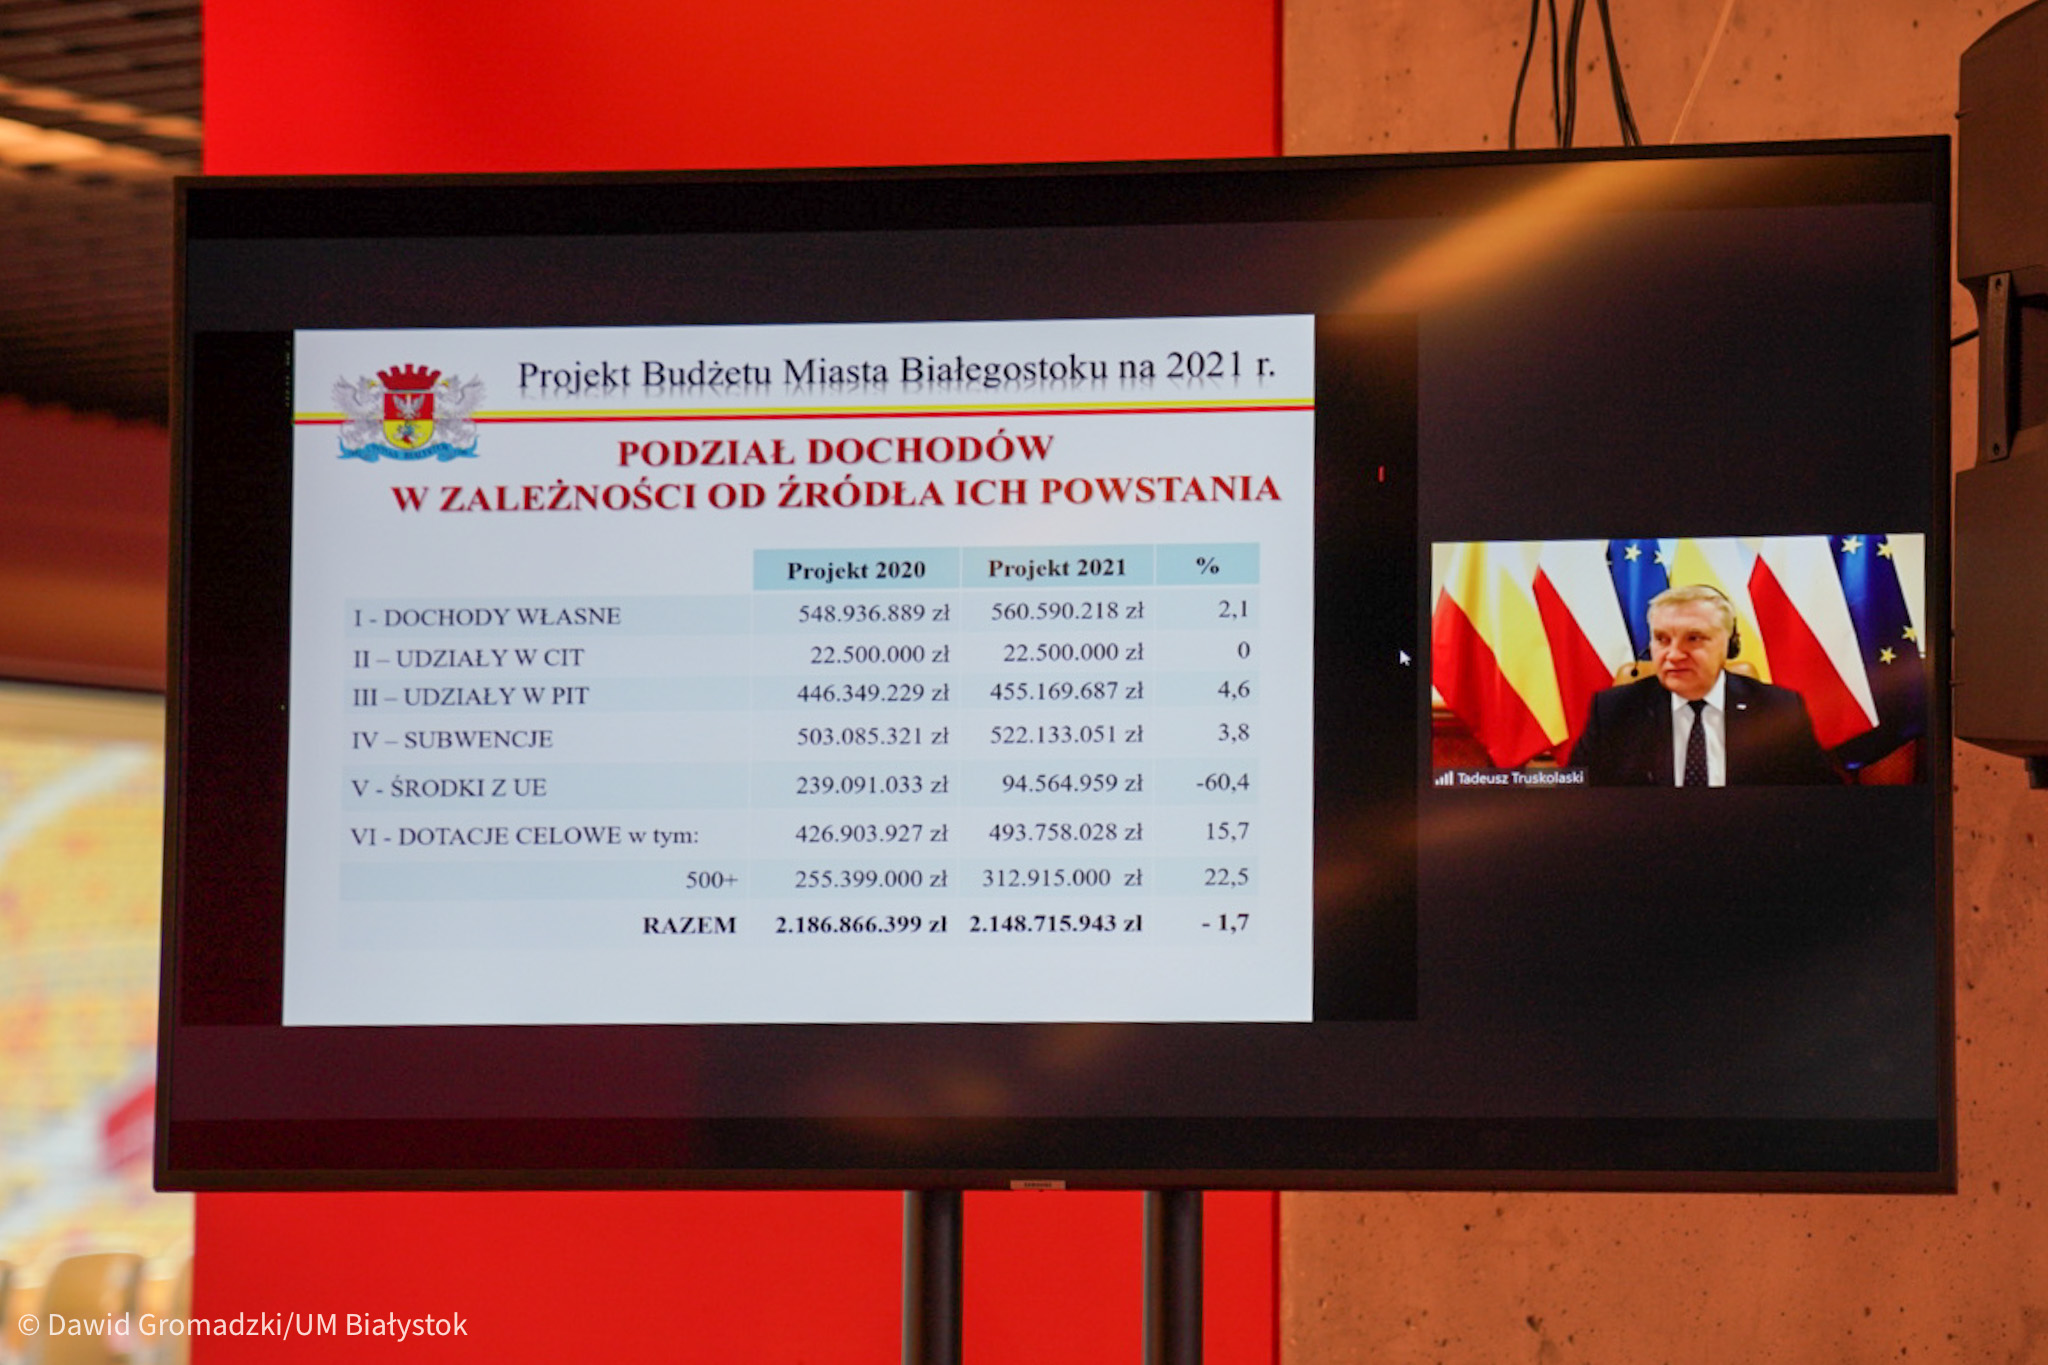 Na pierwszym planie znajduje się duży ekran, na którym przedstawiane są dochody Białegostoku. Po prawej stronie w mniejszym okienku widoczny jest rezydent miasta, która omawia liczby. Ekran stoi na tle czerwonej ściany, natomiast za prezydentem Białegostoku widoczne są flagi Polski, Białegostoku i Unii Europejskiej